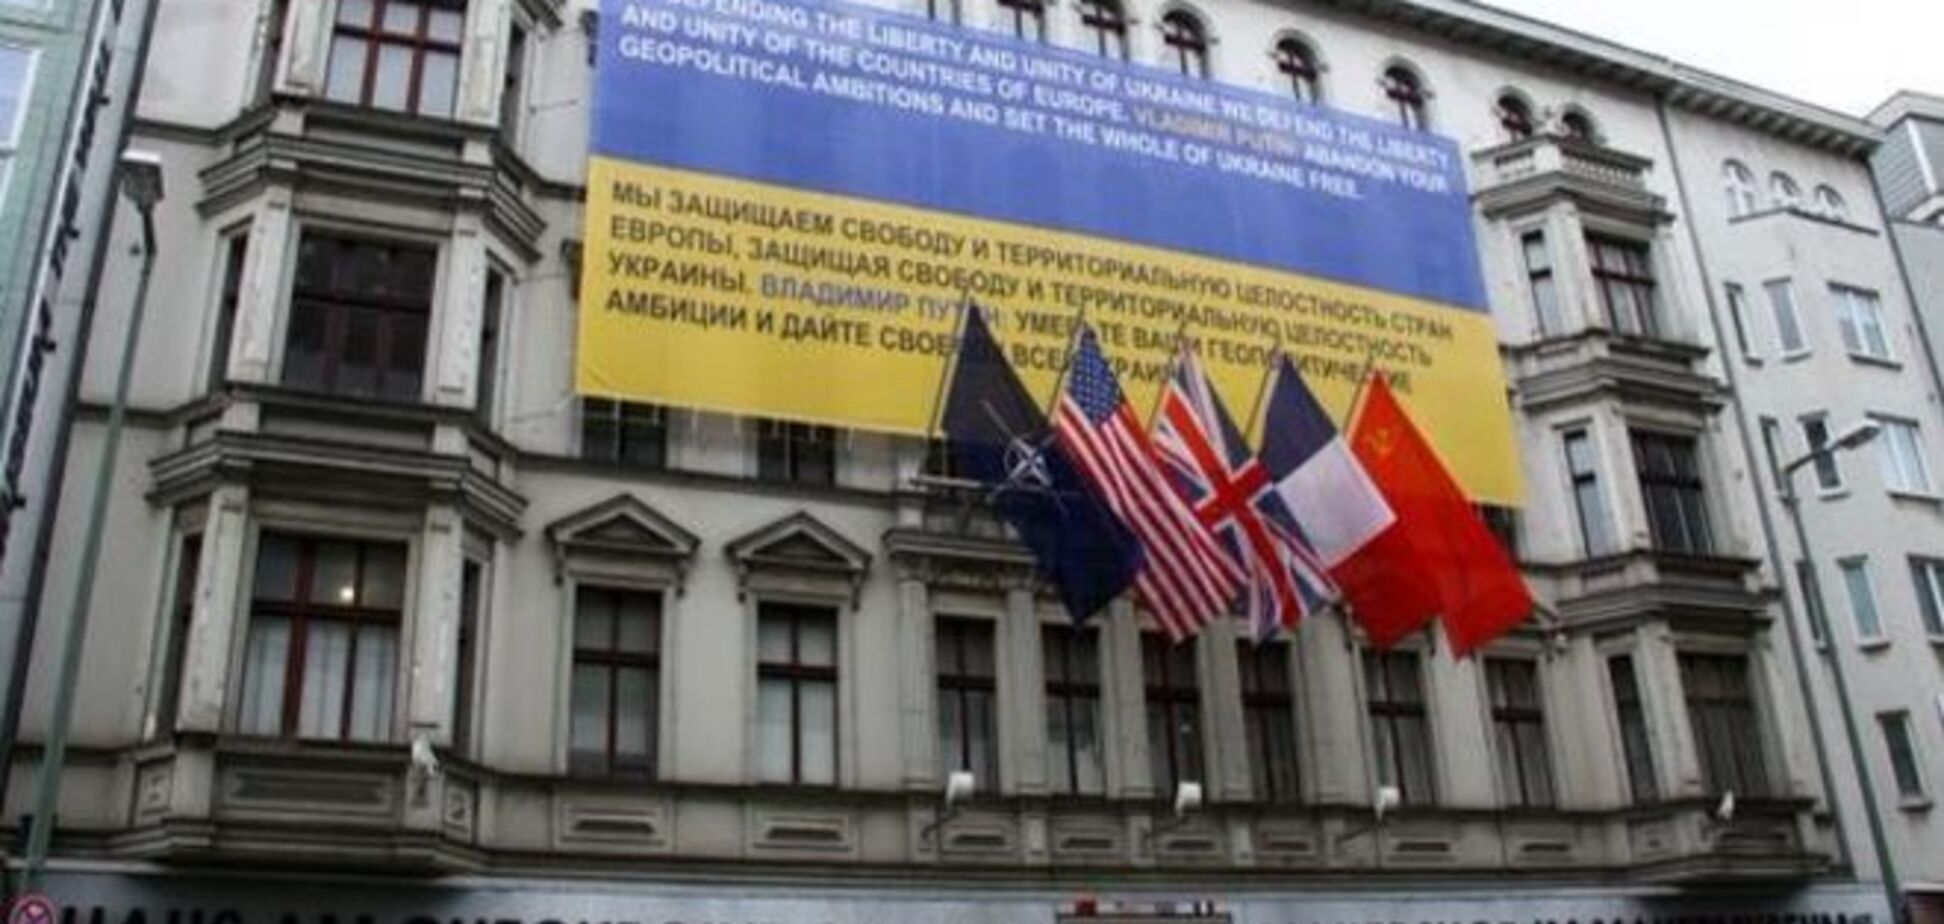 В центре Берлина вывесили огромный банер с требованием к Путину оставить Украину в покое